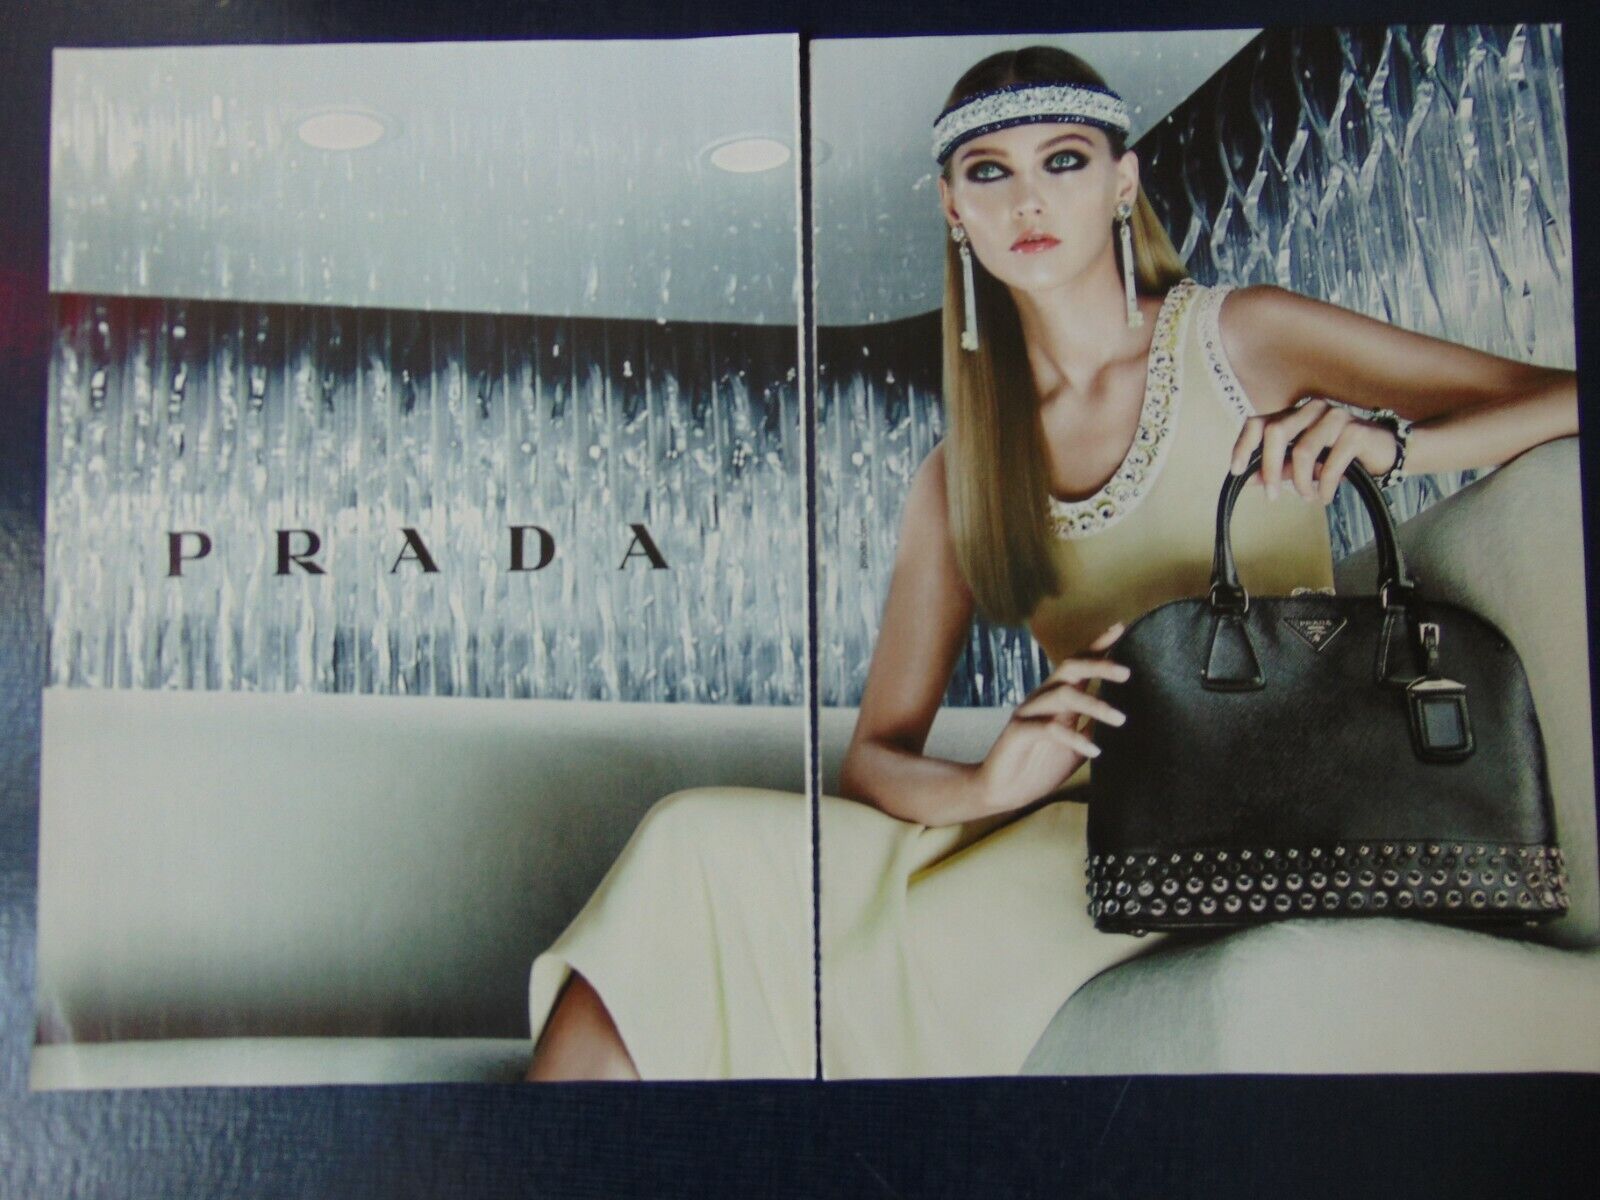 2012 PRADA HANDBAG FASHION LADY vintage art print ad